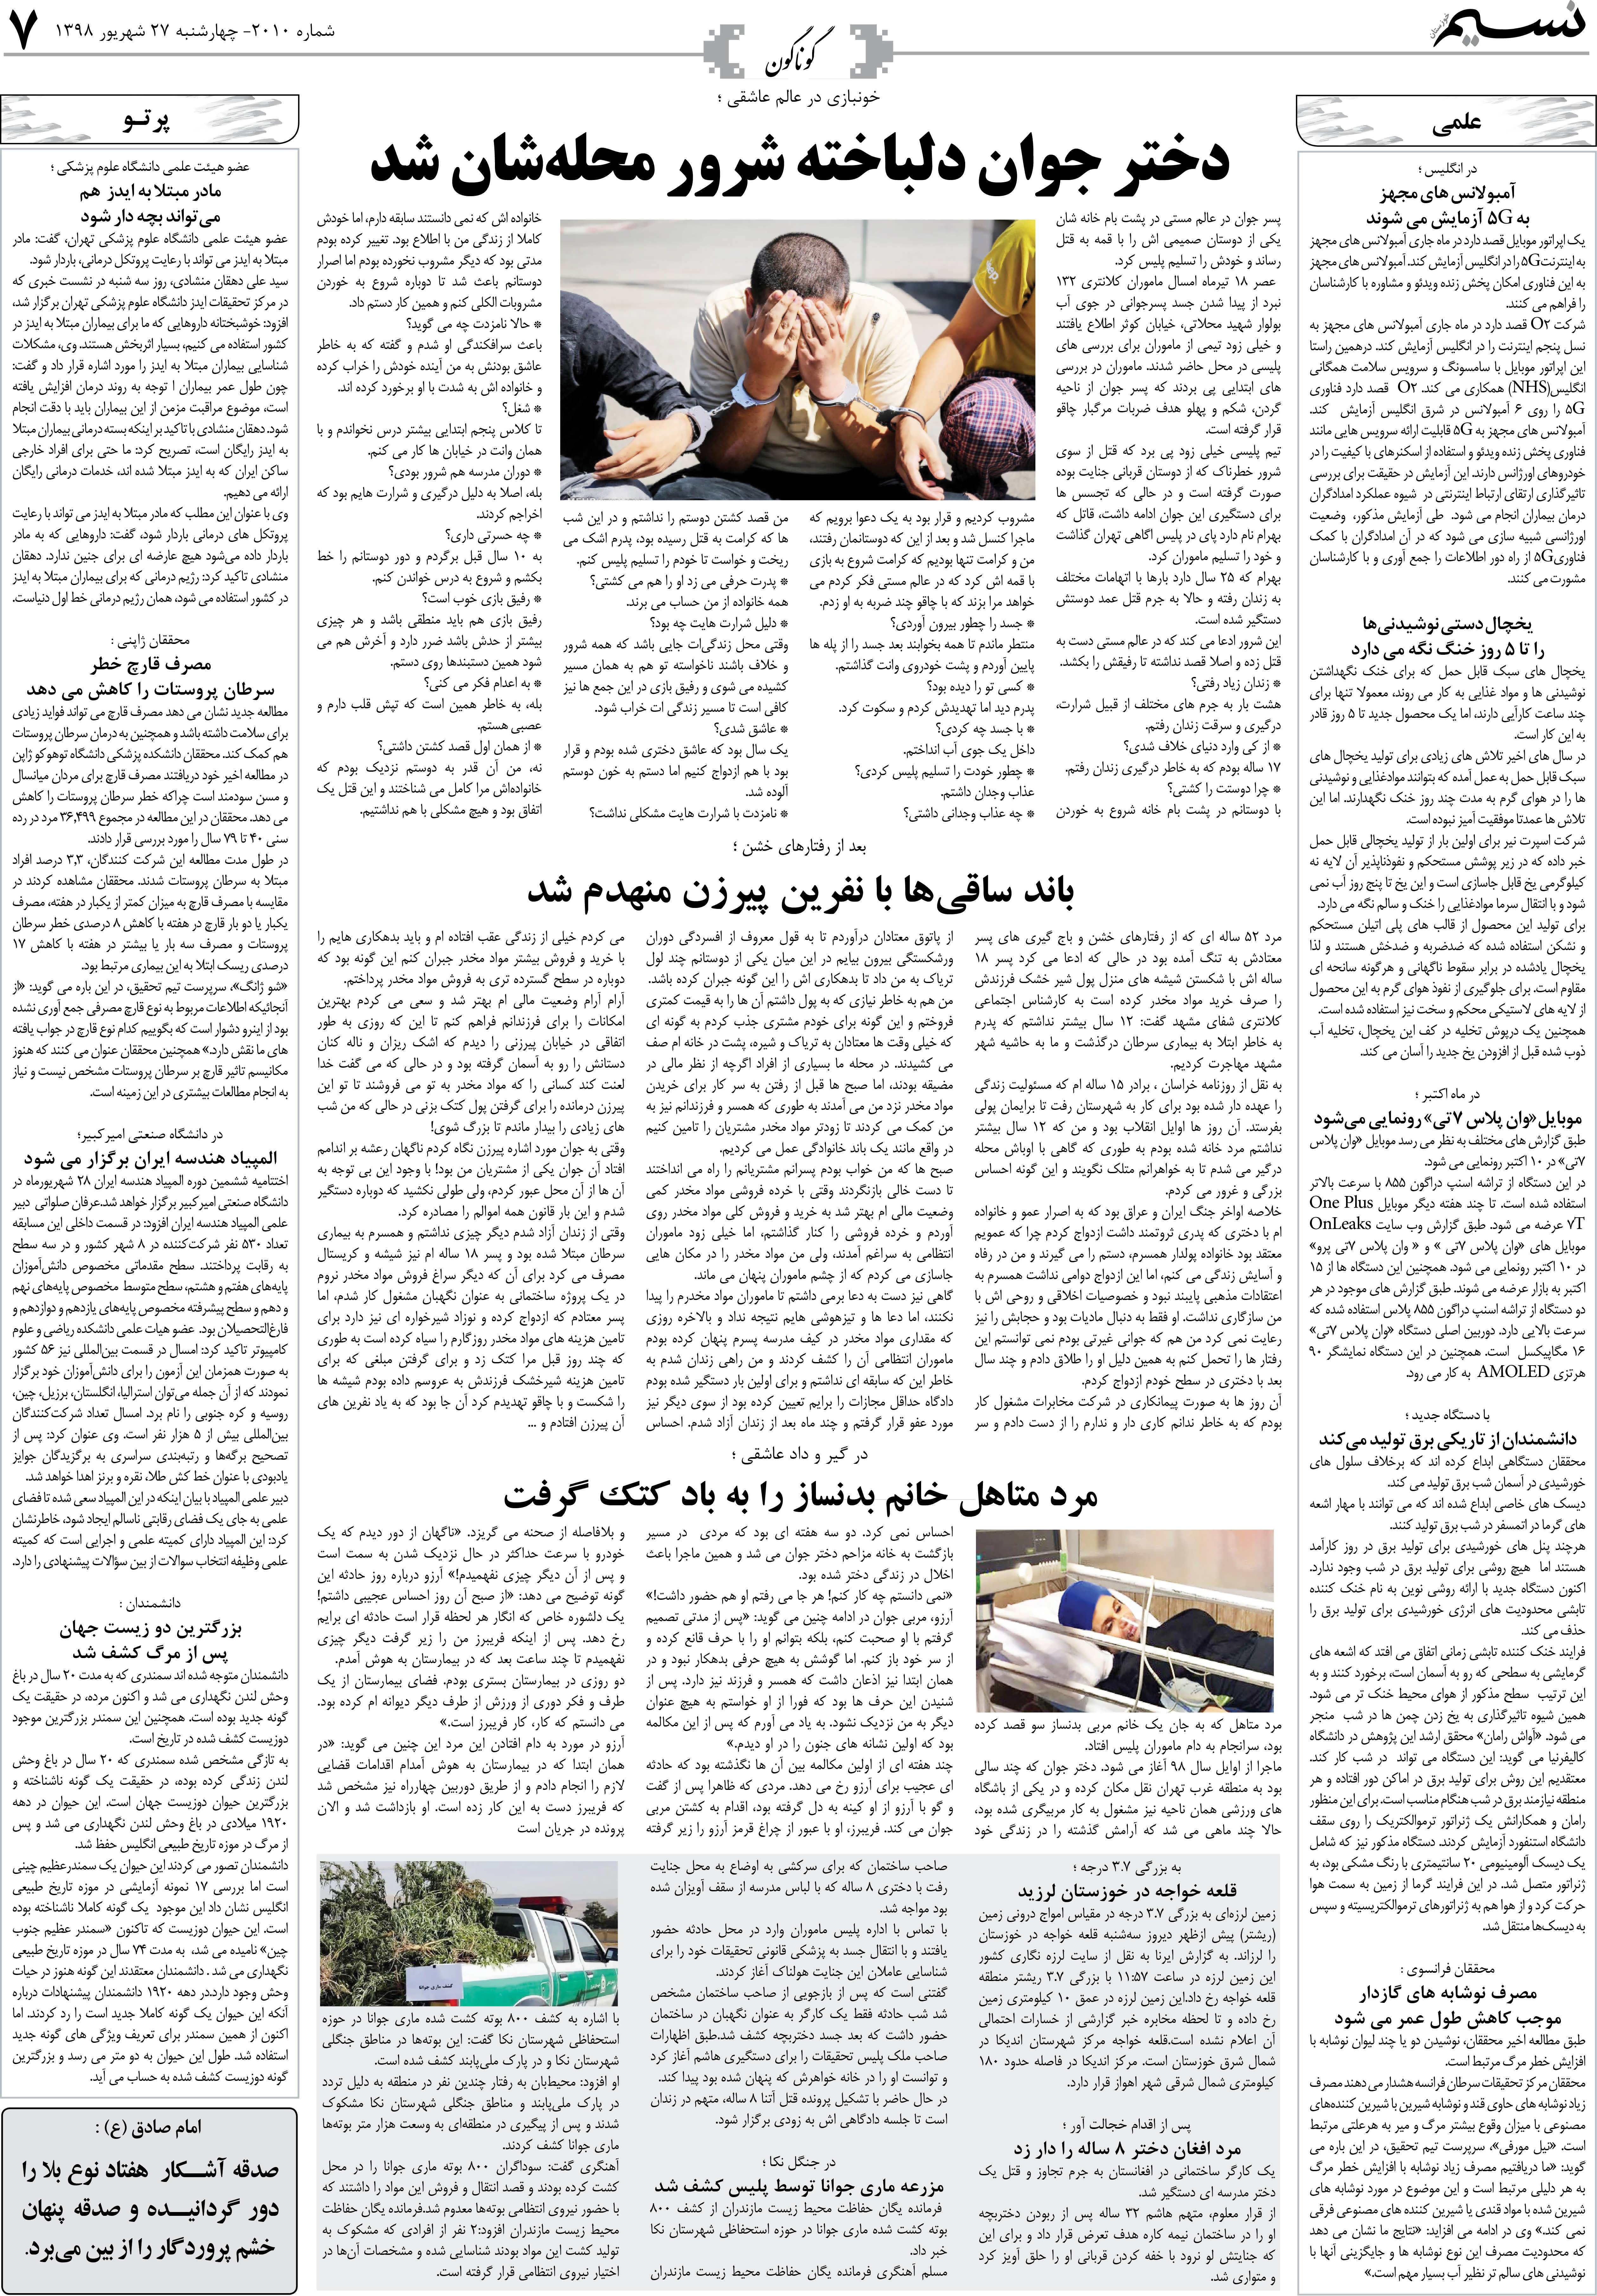 صفحه گوناگون روزنامه نسیم شماره 2010